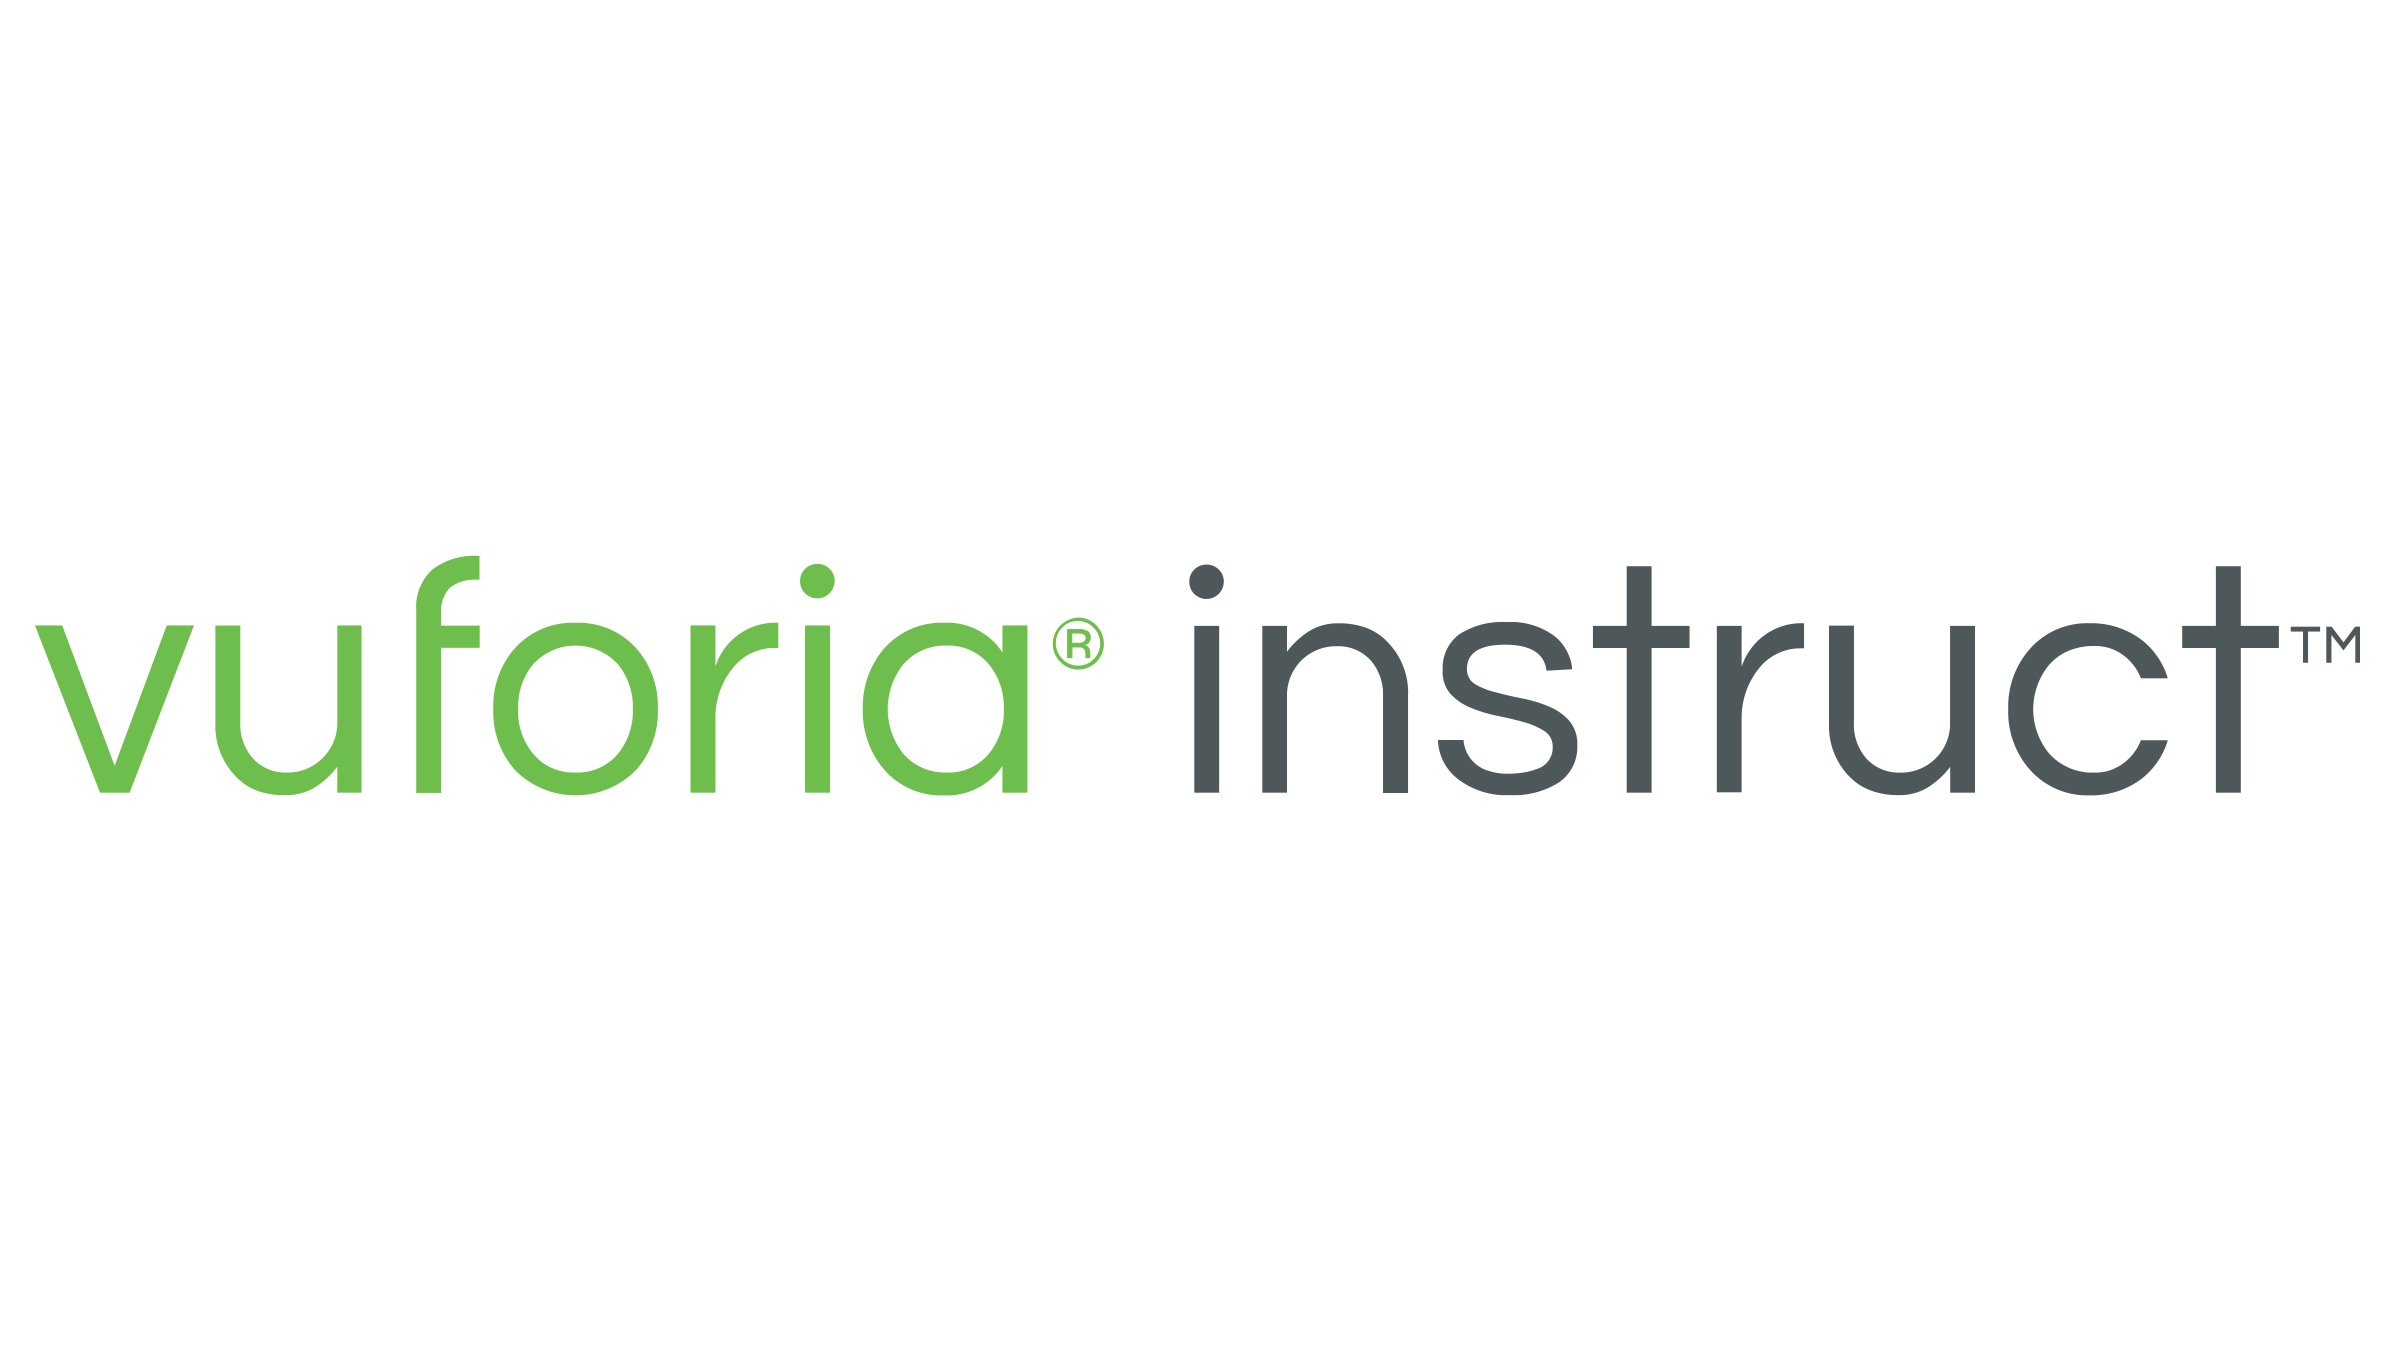 Logotipo verde e cinza do PTC Vuforia Instruct